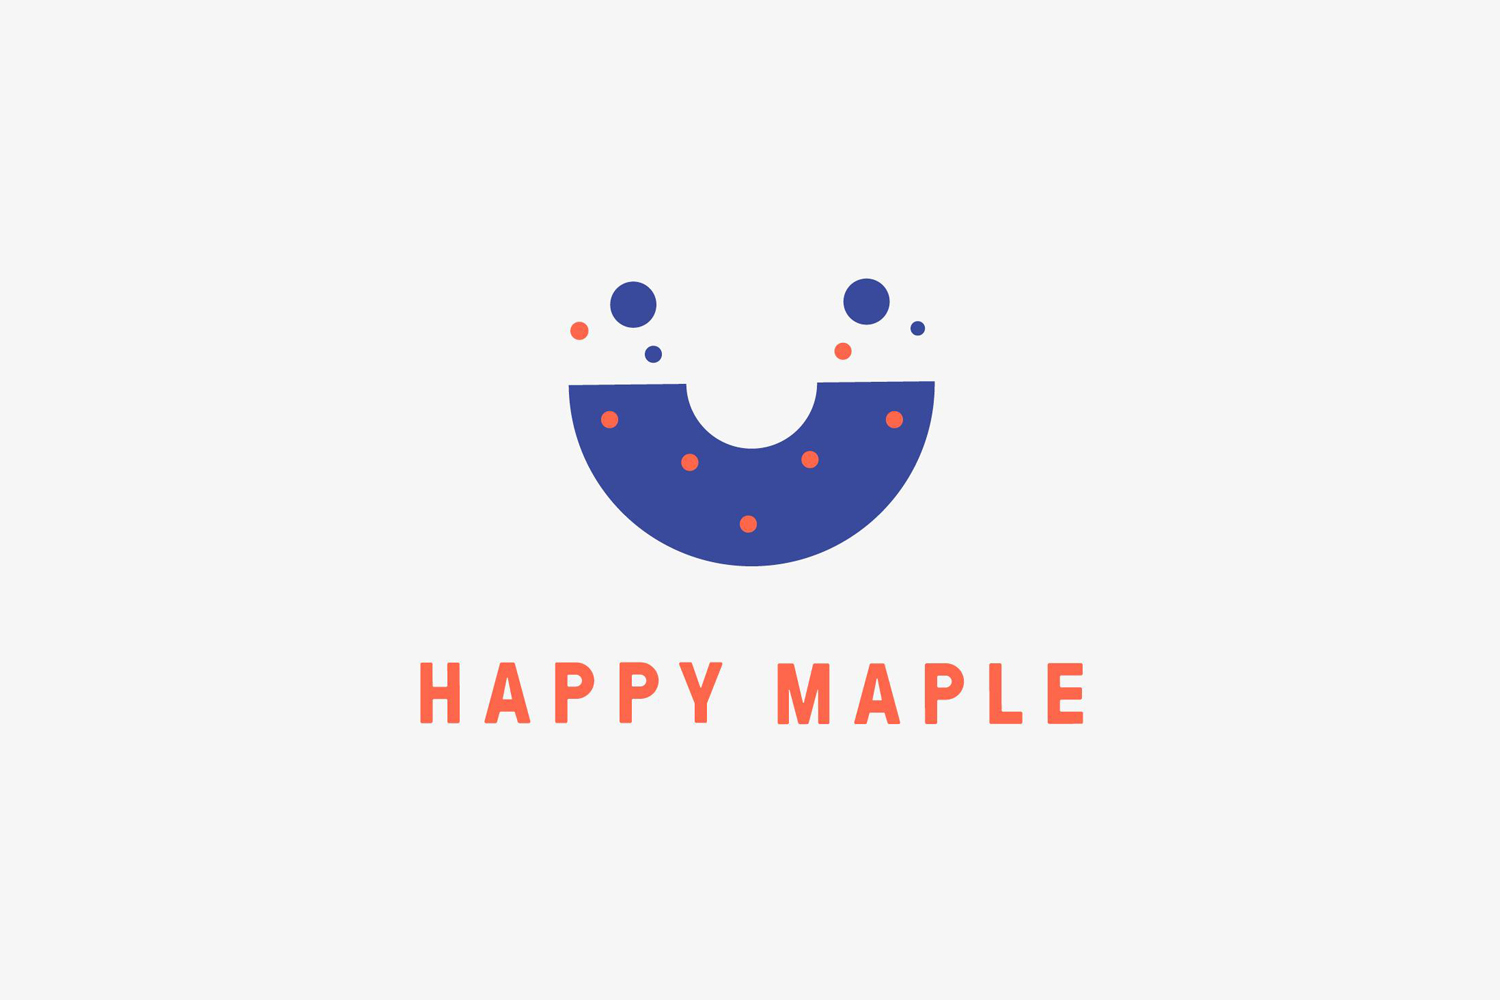 Logo by Sydney-based graphic design studio Garbett for donut bakery Happy Maple. 